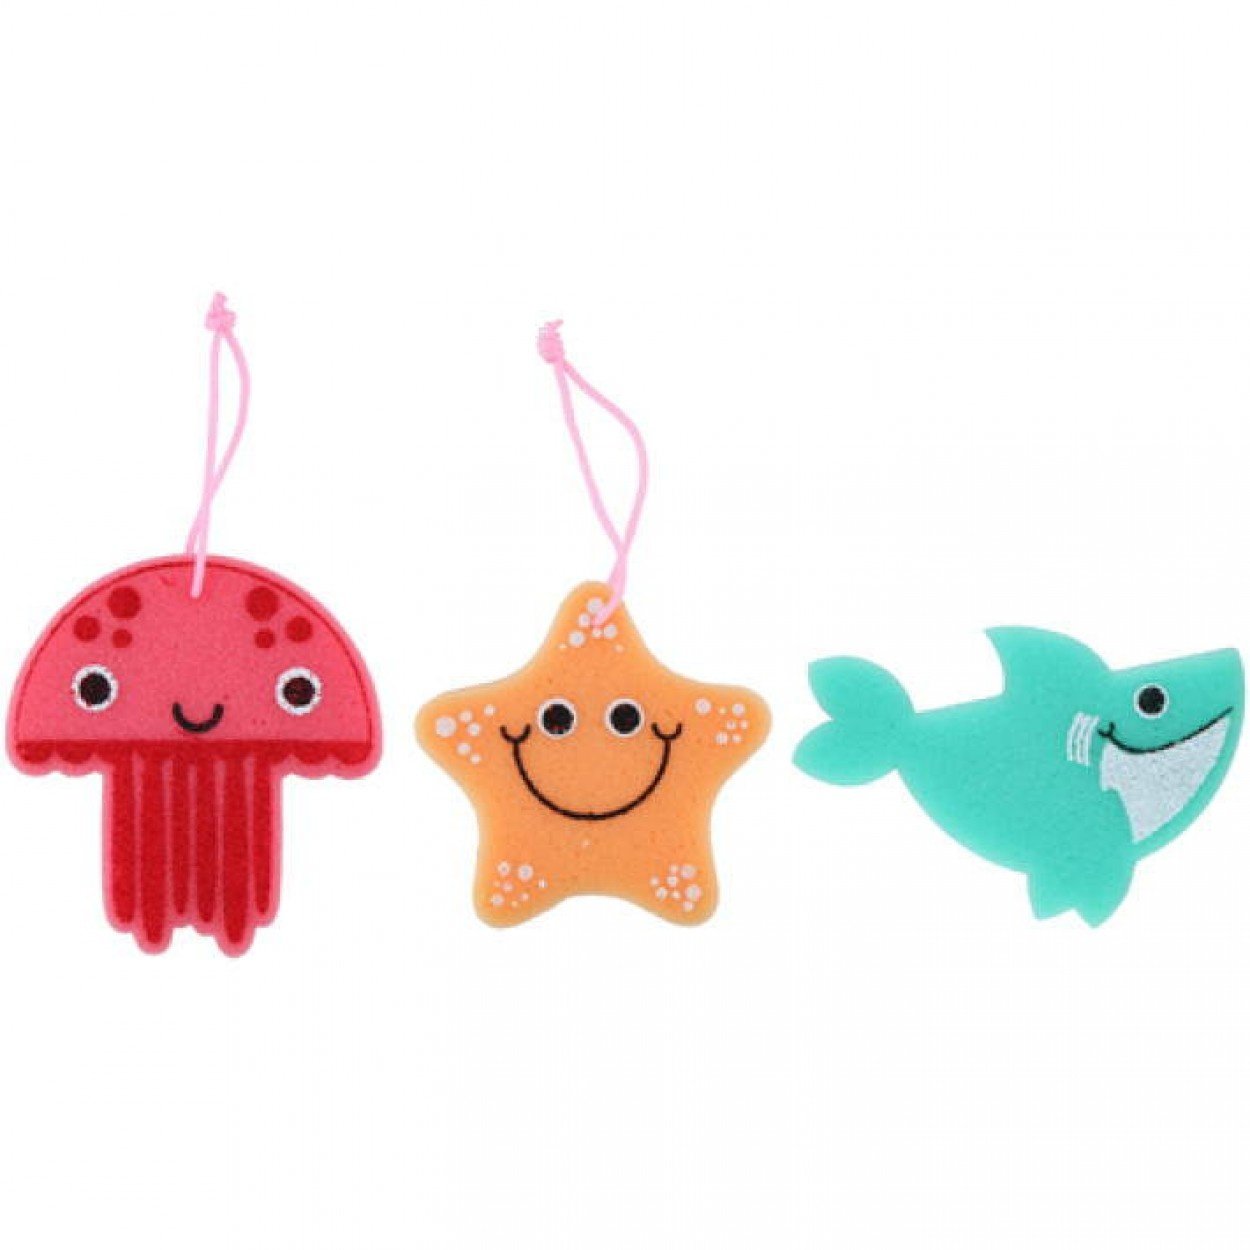 Speelgoed set plastic oceaan dieren 5 stuks - speelgoed online kopen, De  laagste prijs!